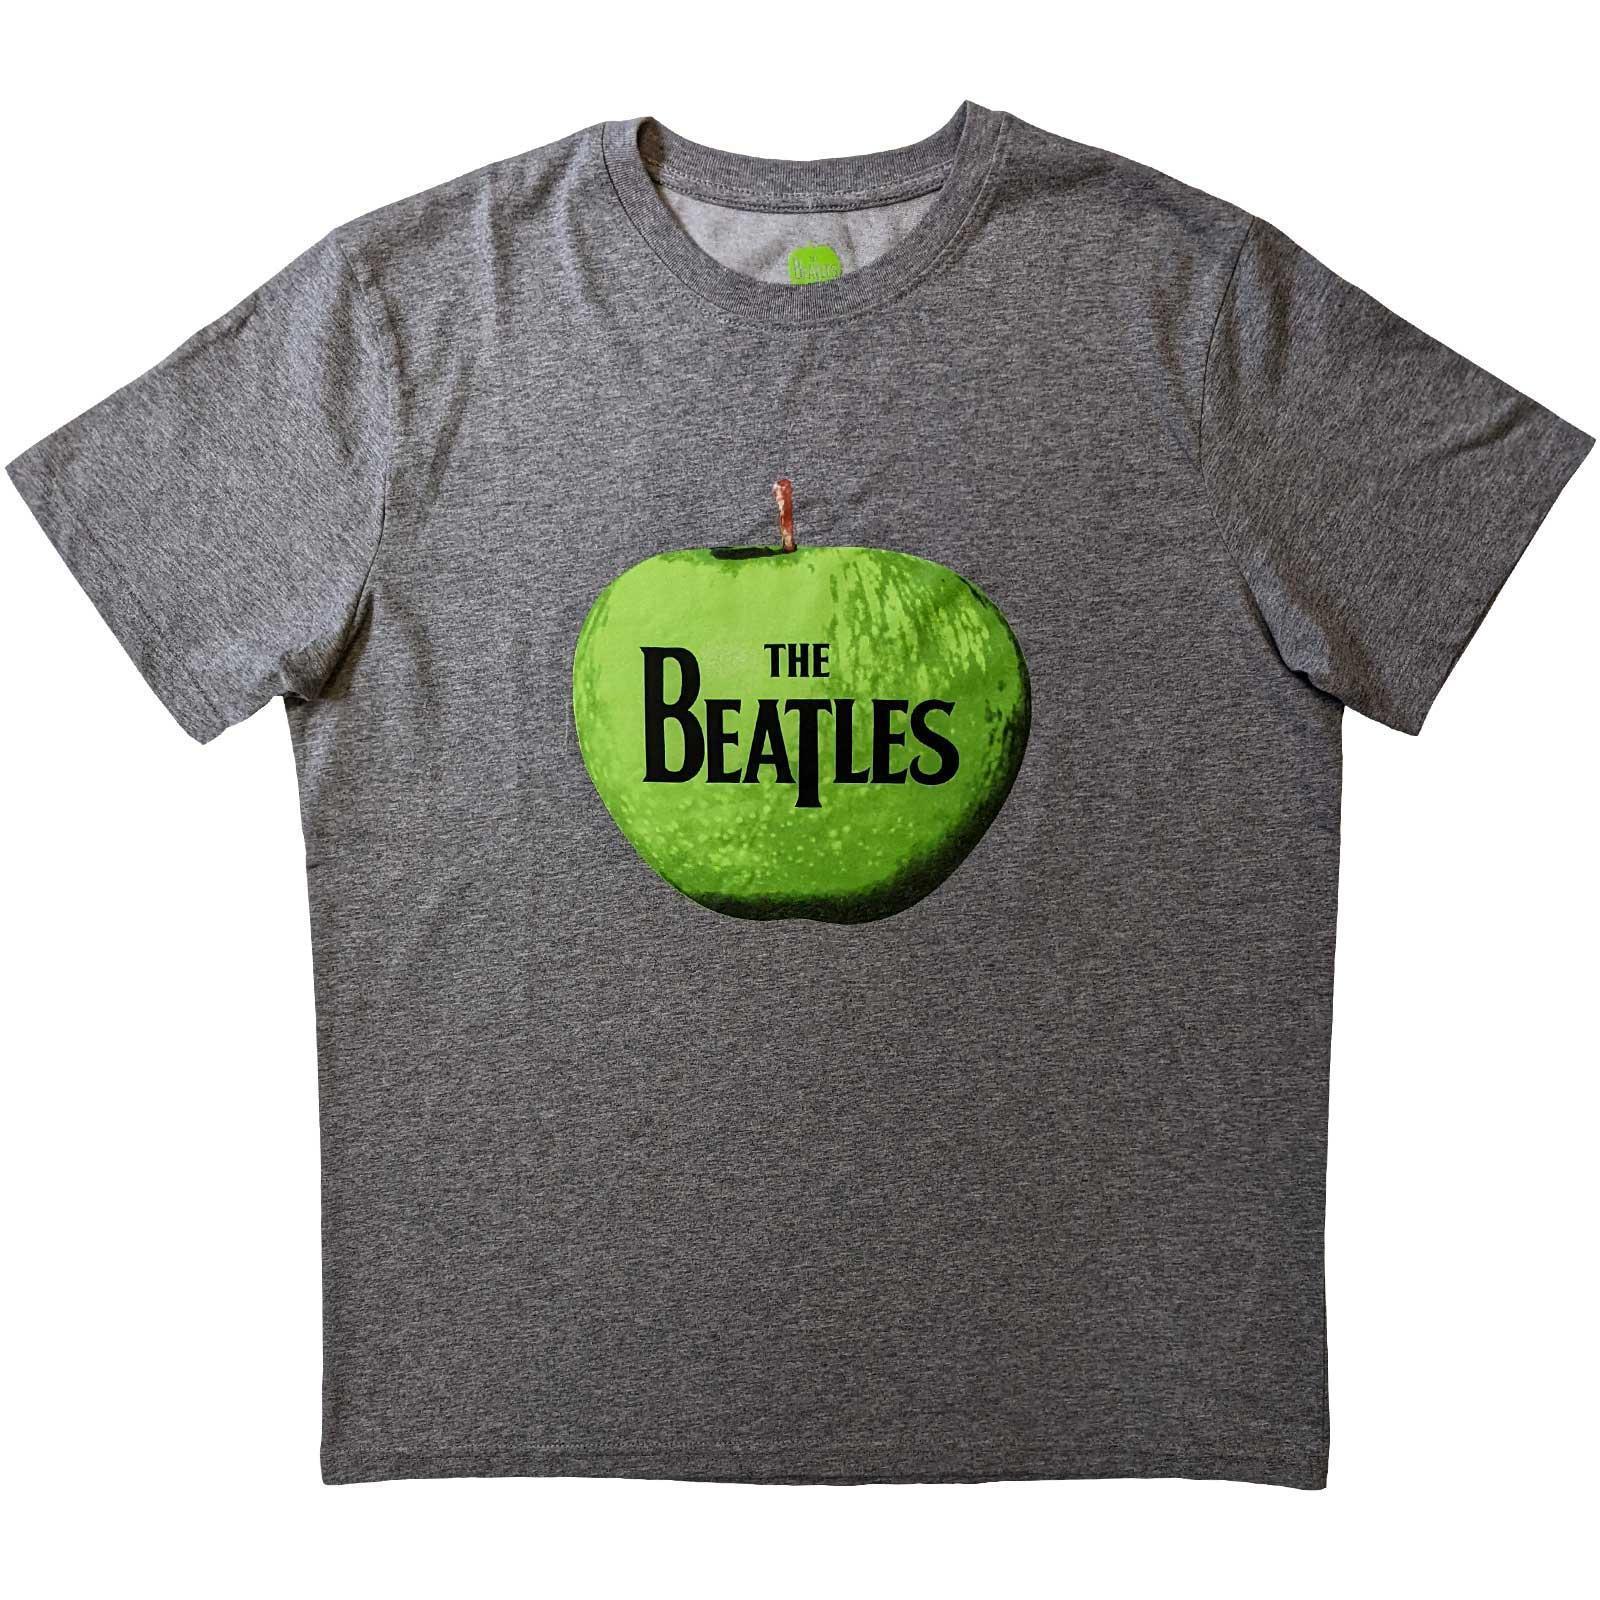 The Beatles Unisex Adult Apple Cotton T-Shirt (Grey) (L)